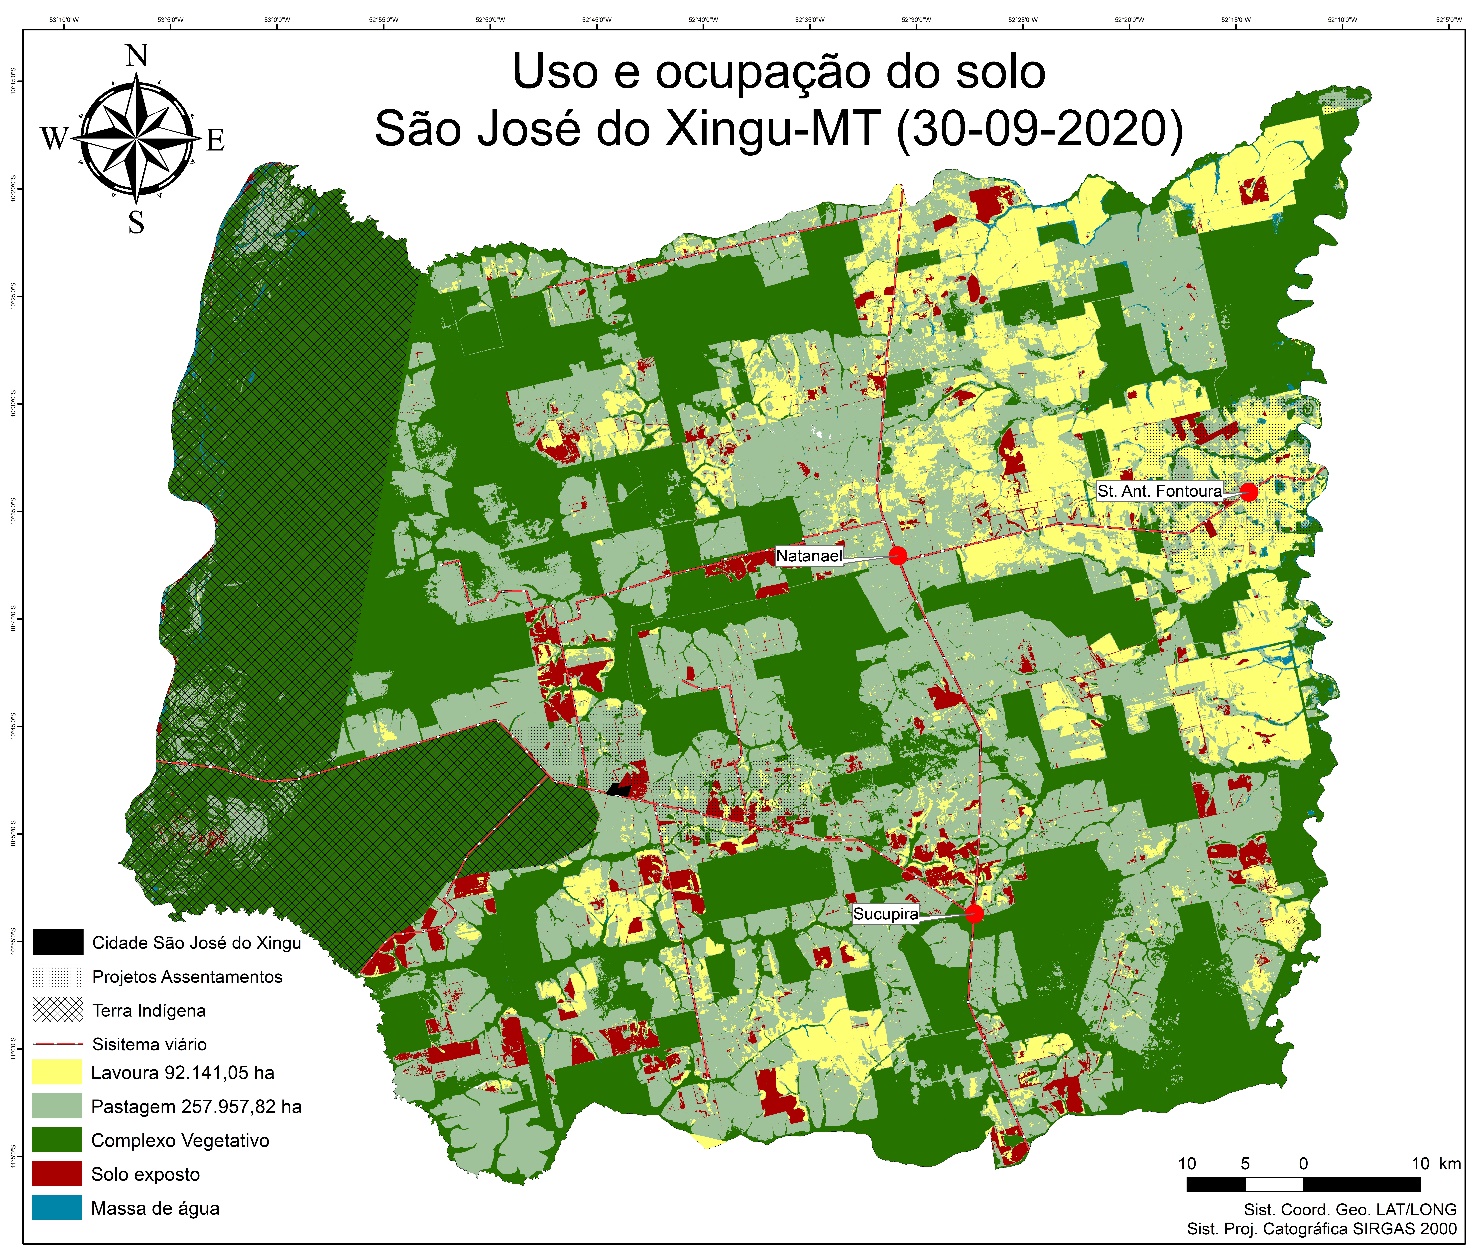 Figura 6. Uso e ocupação do solo no município de São José do Xingu, região Norte Araguaia do Estado de Mato Grosso, Brasil. FONTE: autoria própria.